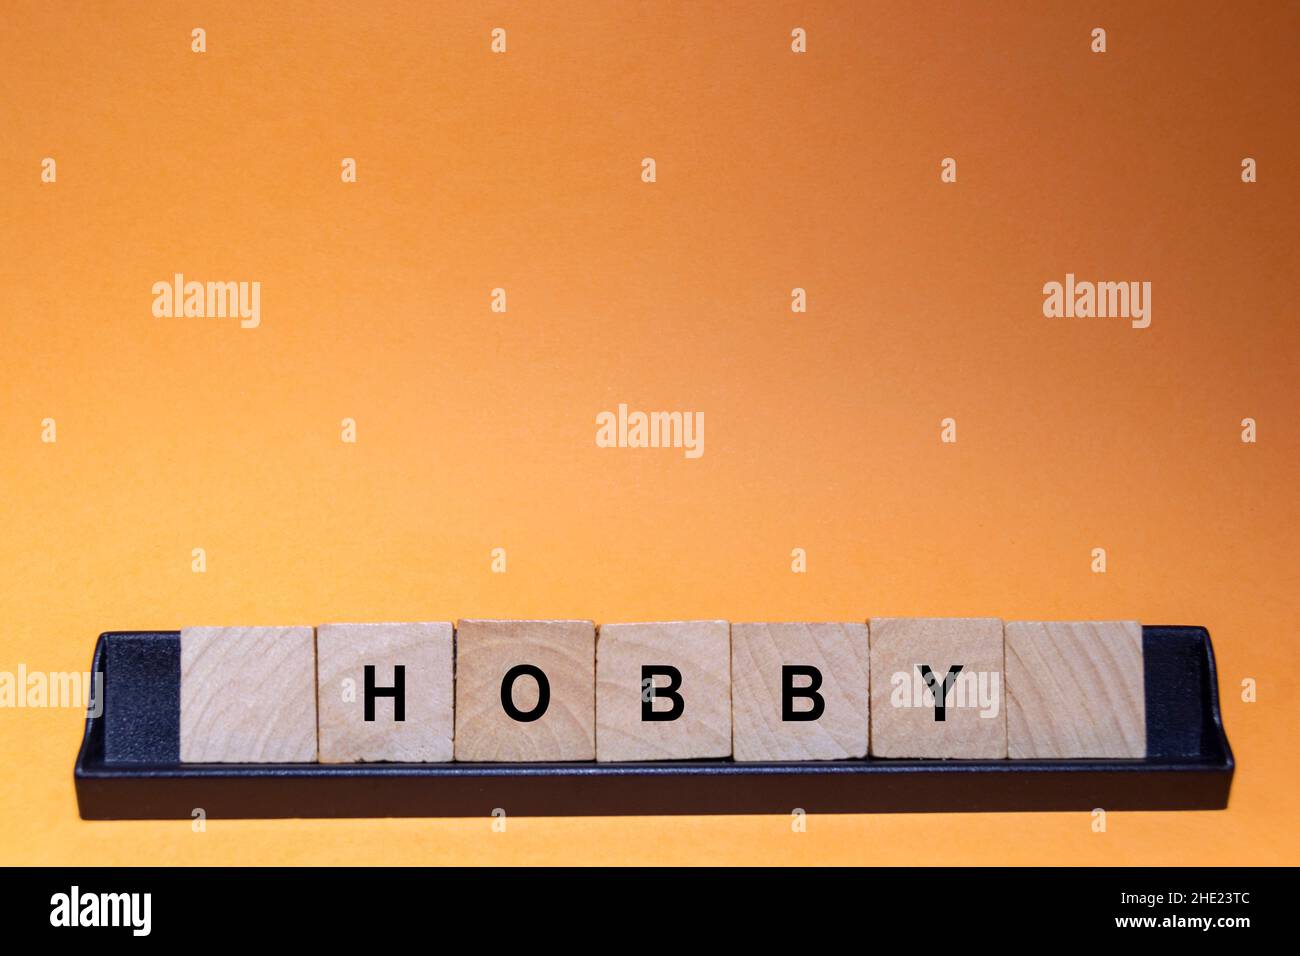 HOBBY. Parola scritta su piastrelle quadrate di legno con sfondo arancione. Fotografia orizzontale. Foto Stock